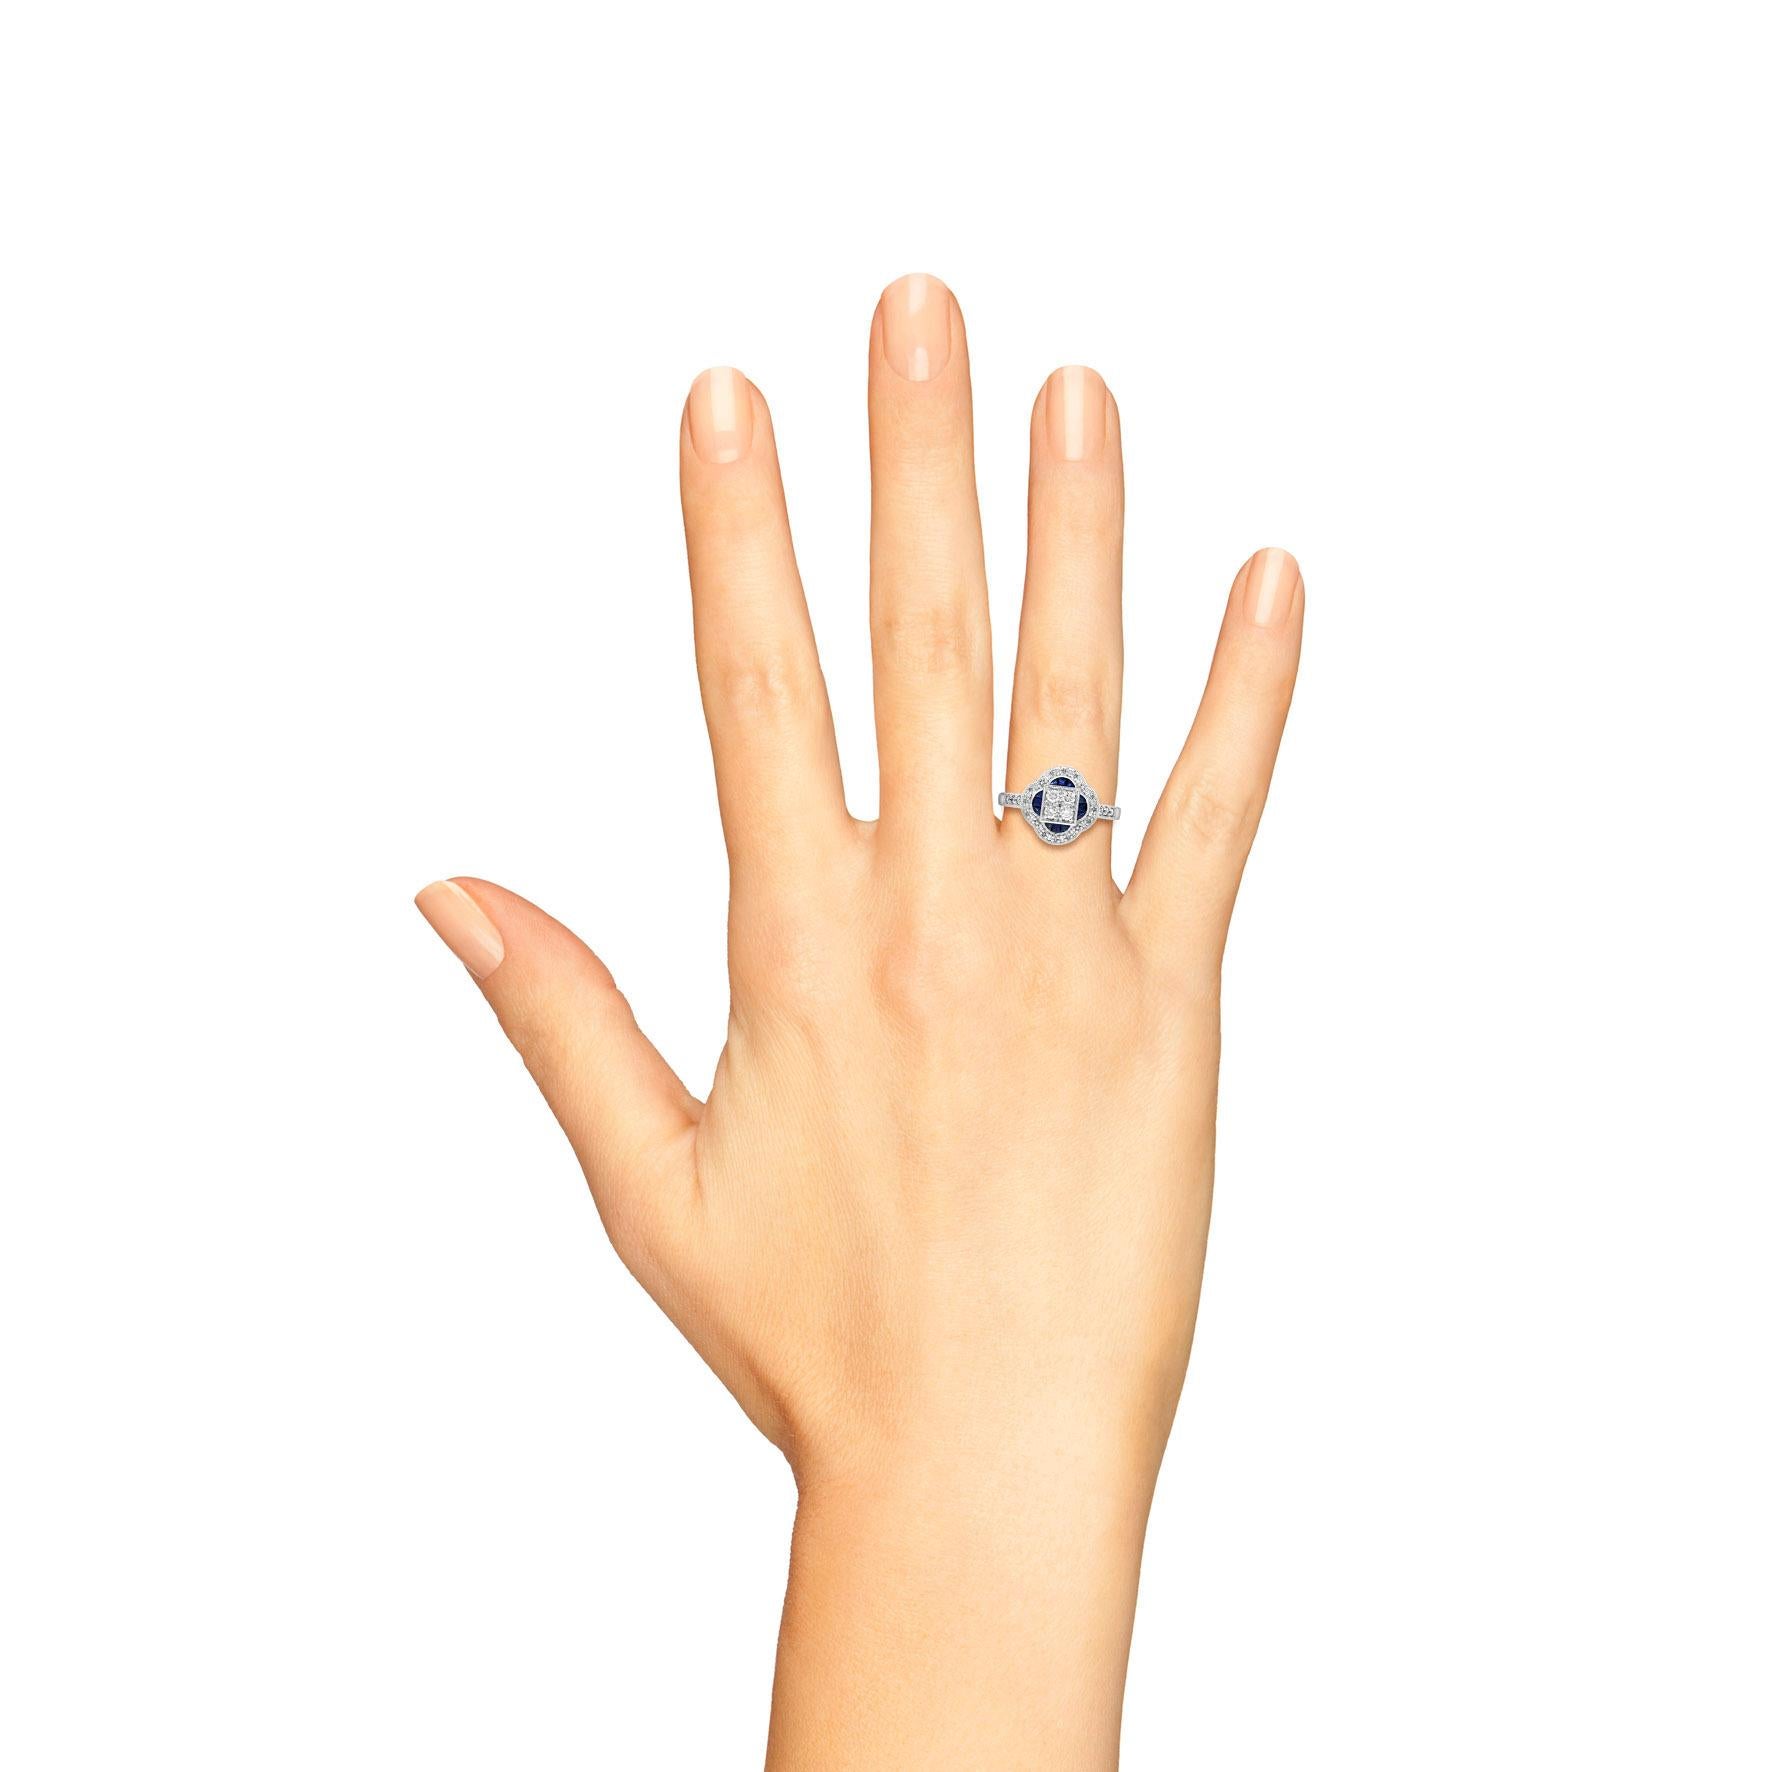 Ein schöner Ring in Blumenform für alle, die antik inspirierten Schmuck lieben. Aus schillernden Diamanten im Rundschliff und Saphiren im französischen Schliff, gefasst in 9 Karat Weißgold. Insgesamt vier Diamanten in der Mitte formen eine Blume mit